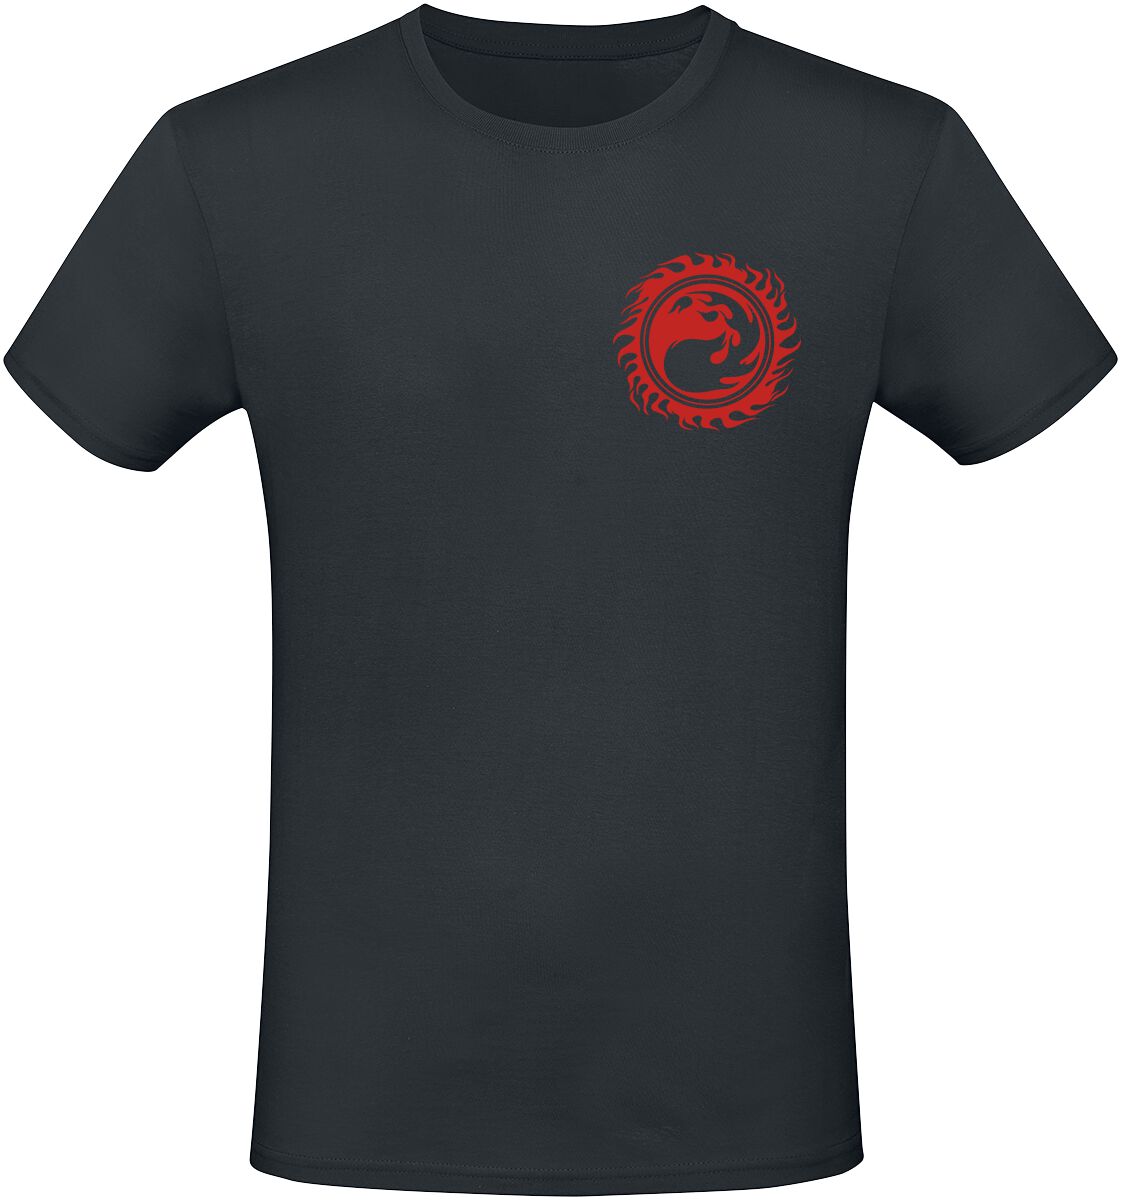 Magic: The Gathering - Gaming T-Shirt - Red Mana - S bis XXL - für Männer - Größe M - schwarz  - EMP exklusives Merchandise!